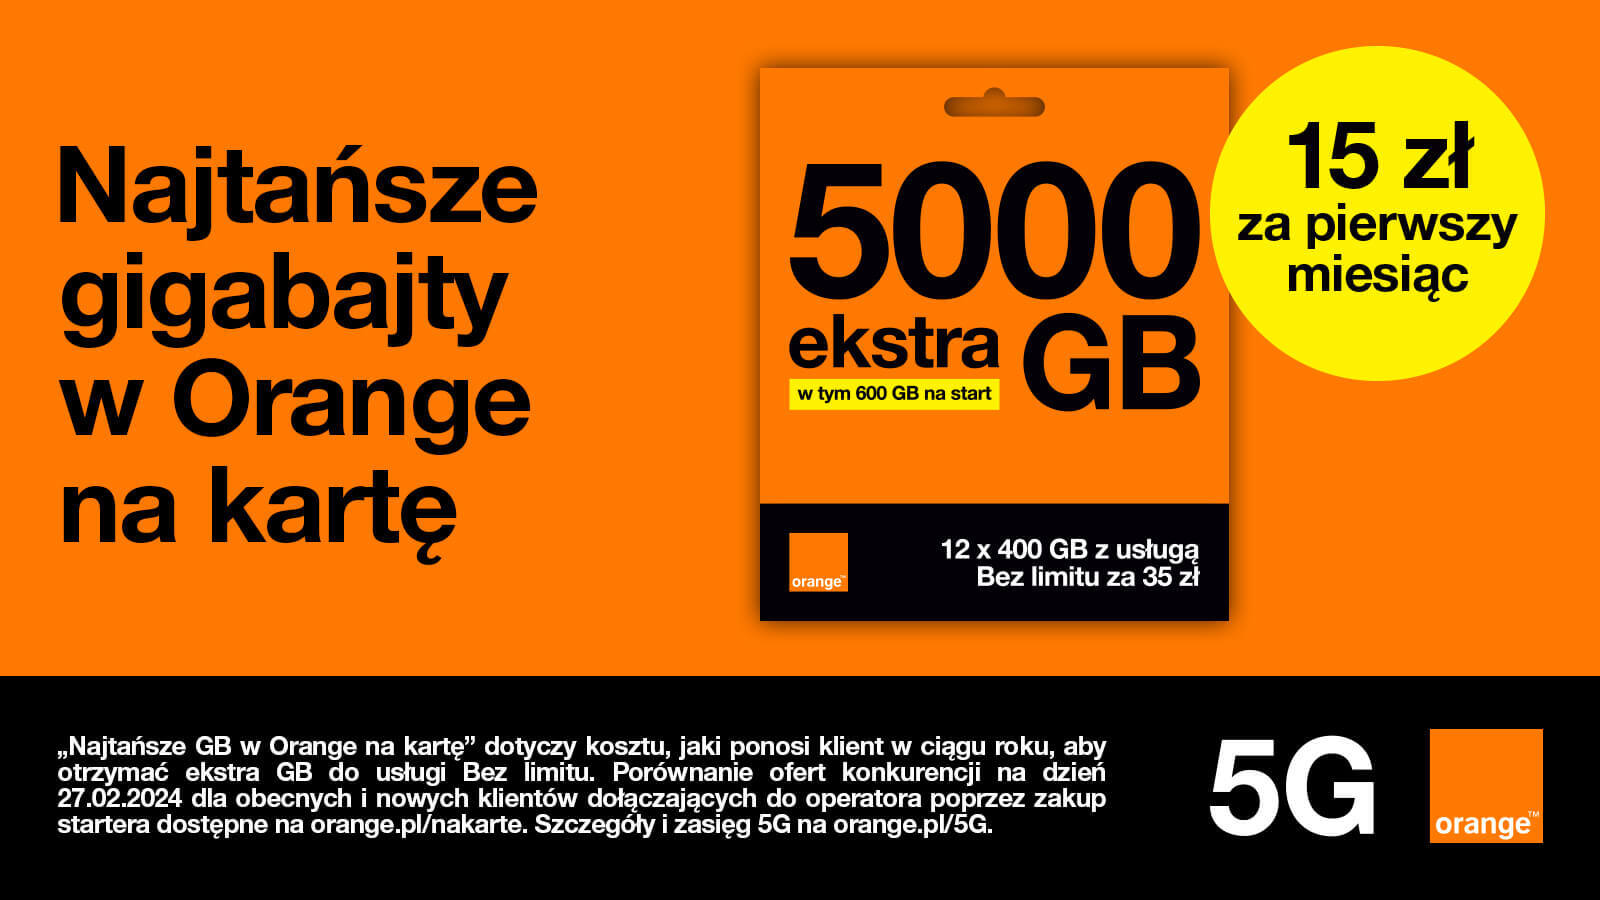 5000 GB ekstra od 15 zł na start w Orange na kartę